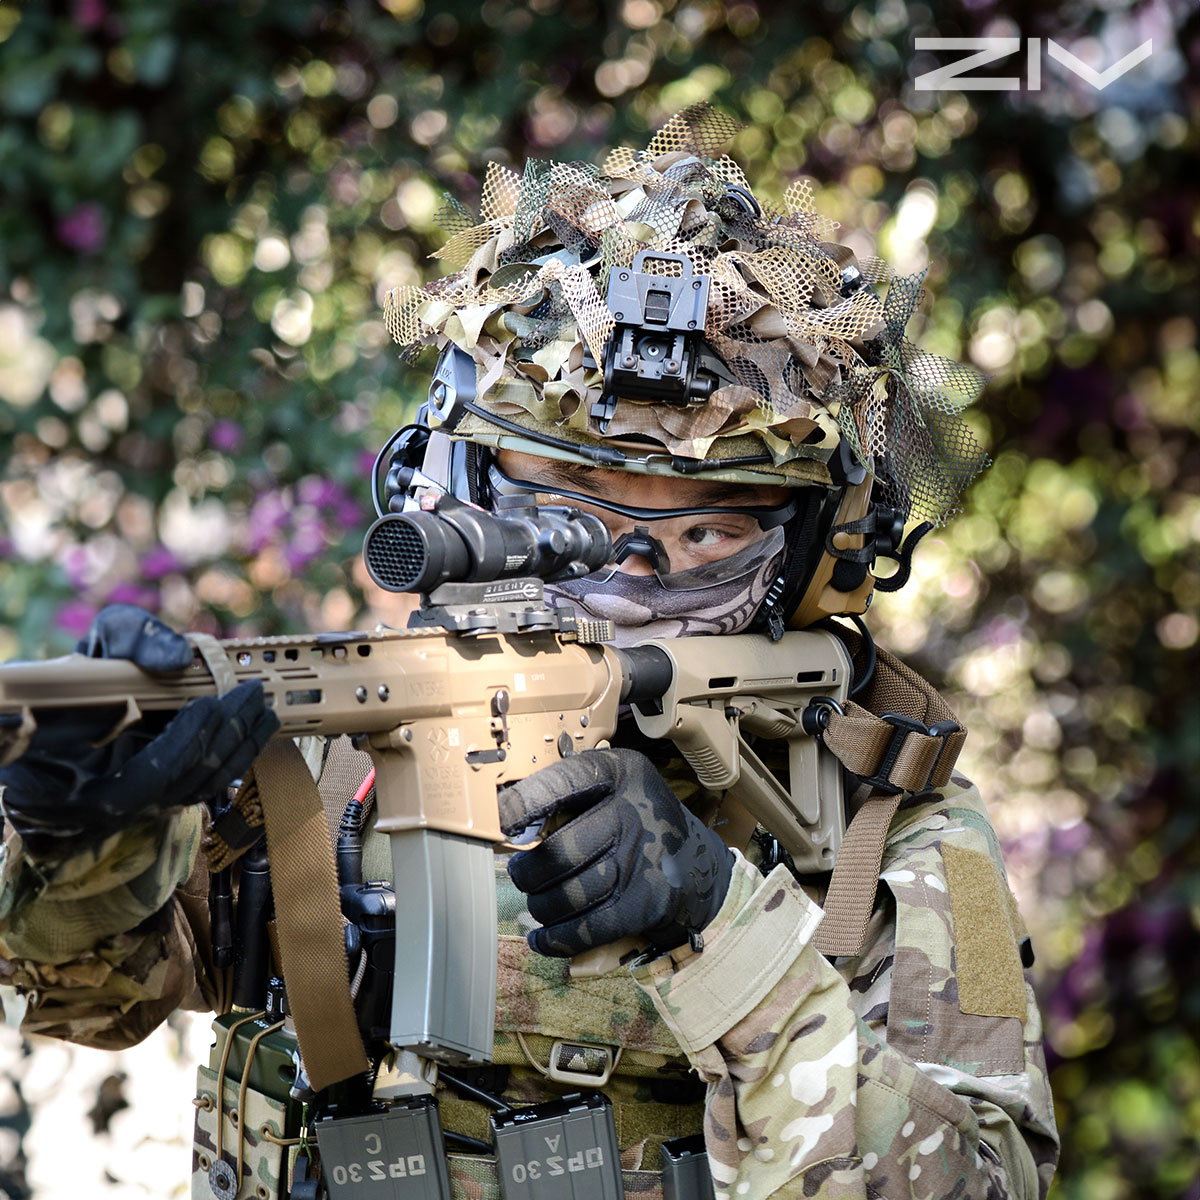 配戴ZIV-ACTION軍用安全眼鏡的射擊玩家